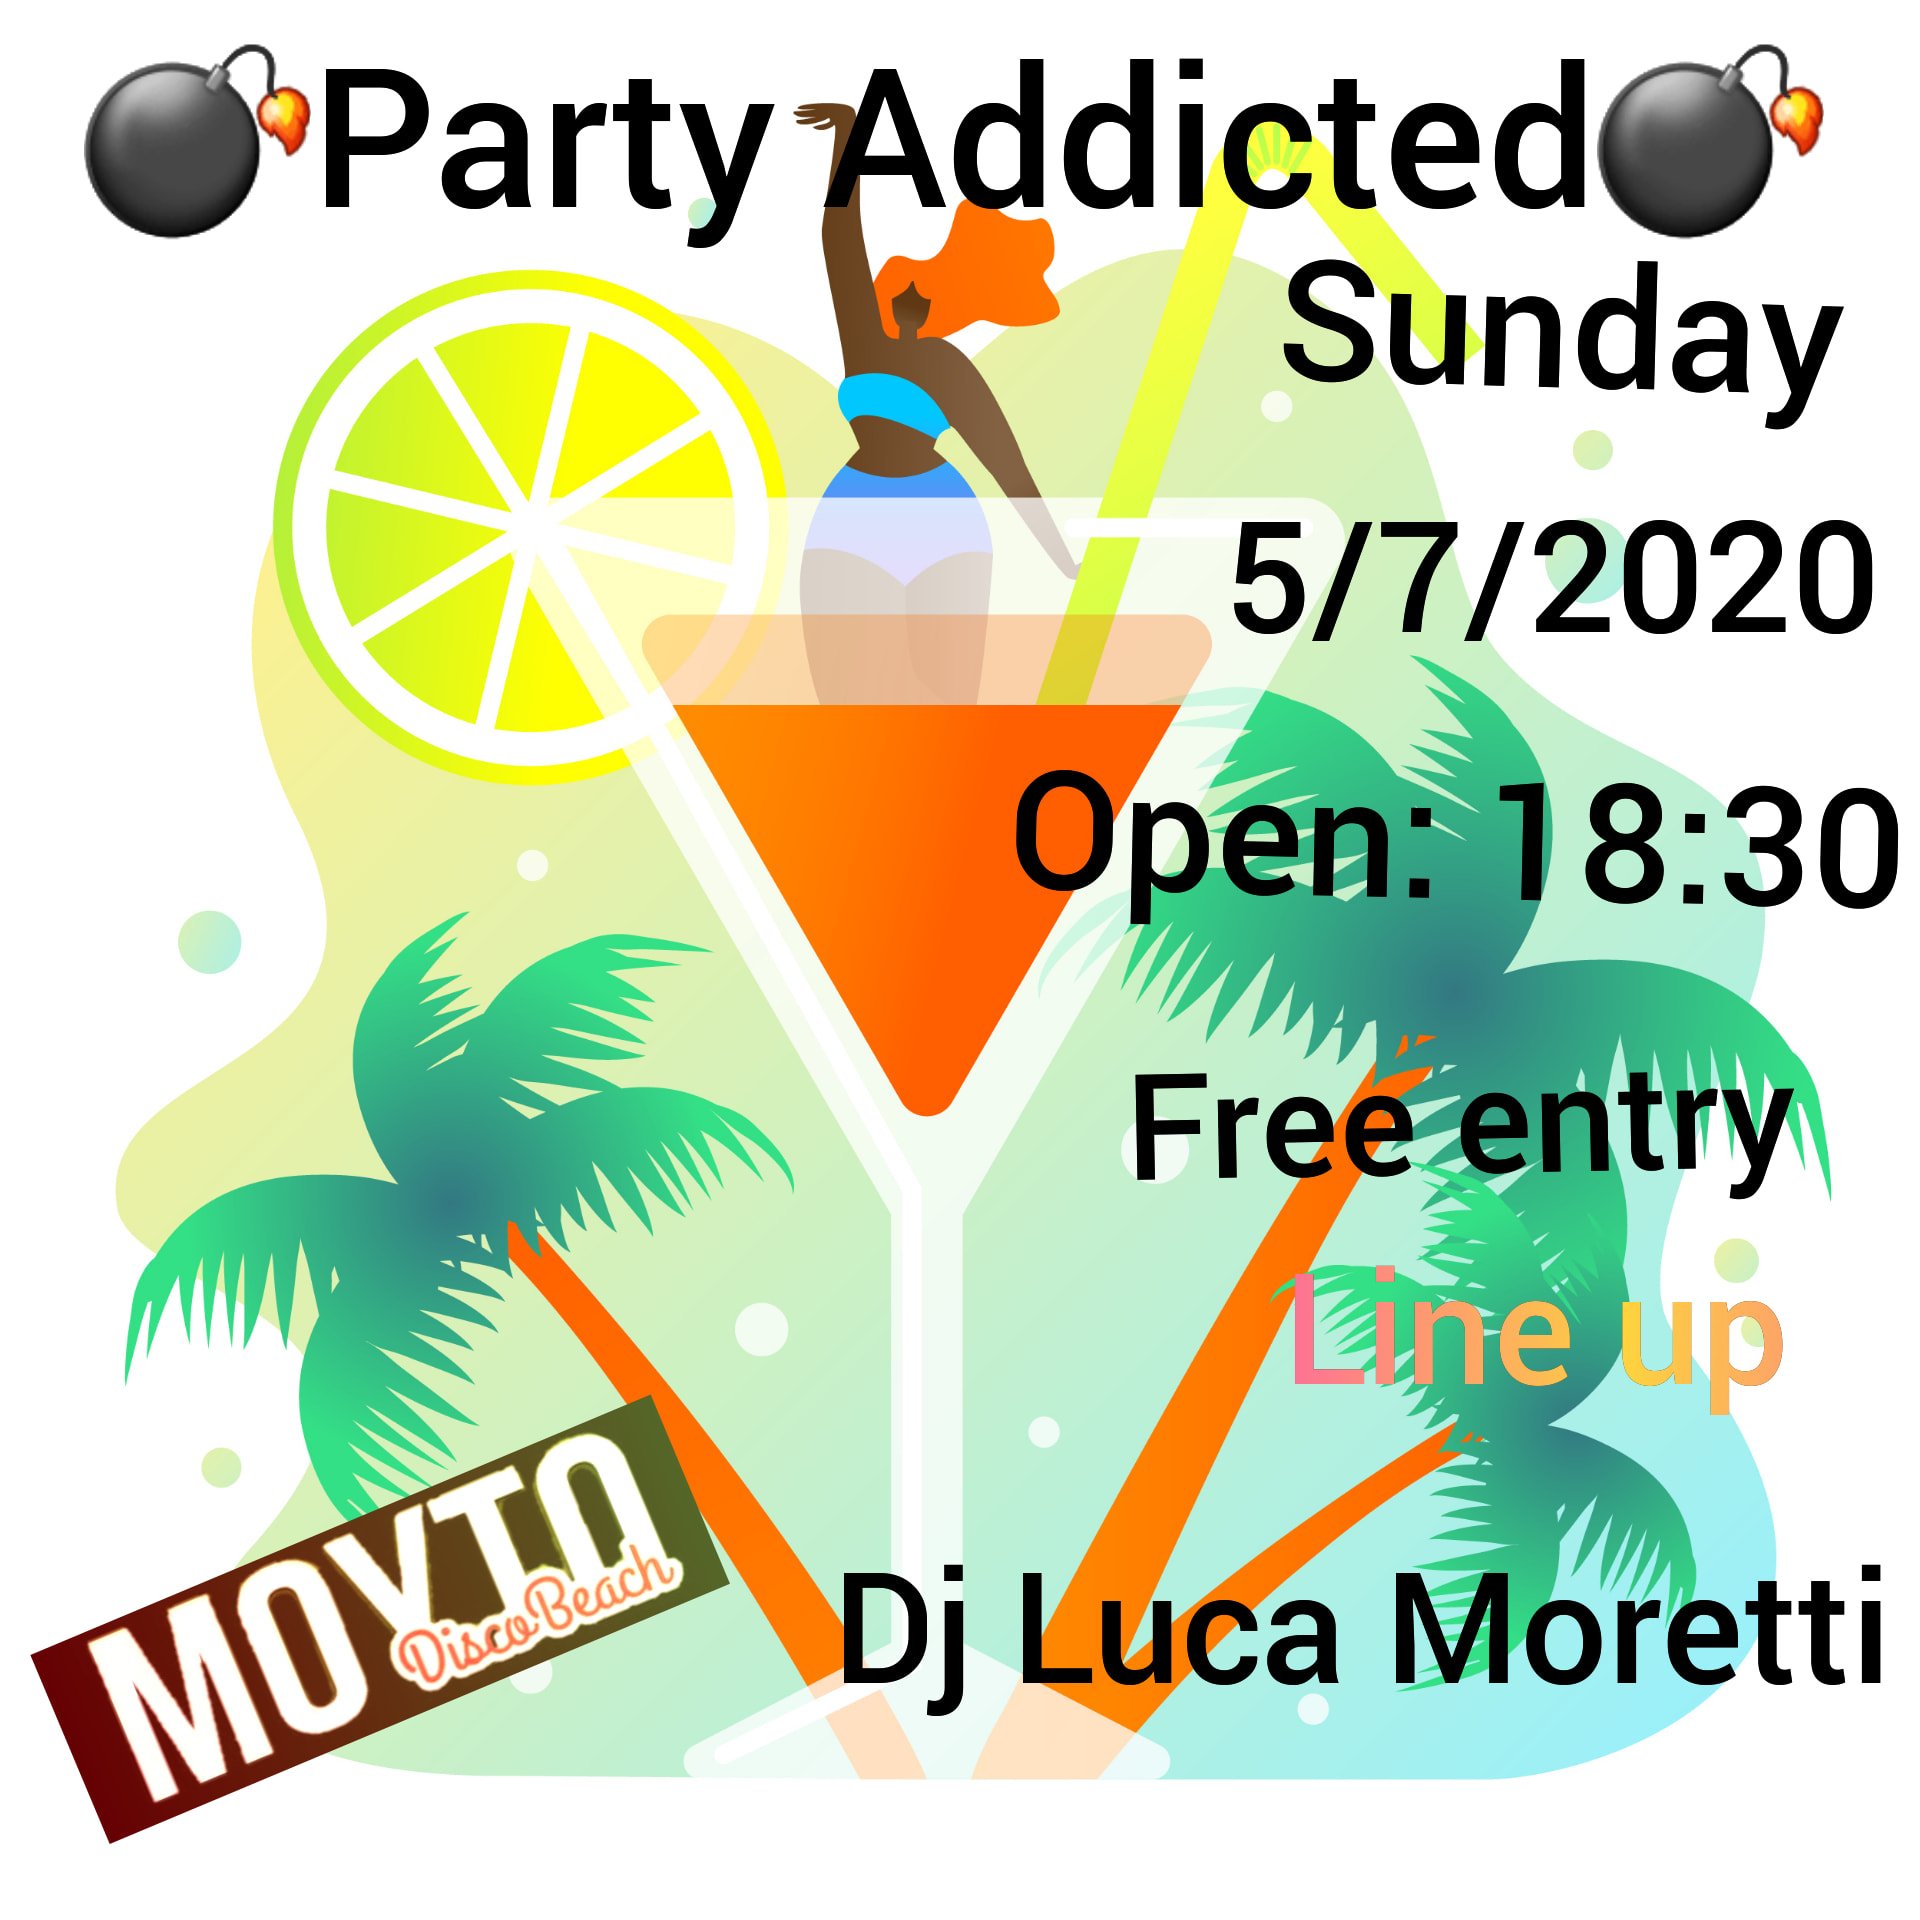 Moyto Disco Beach Porto Sant'Elpidio, party addicted